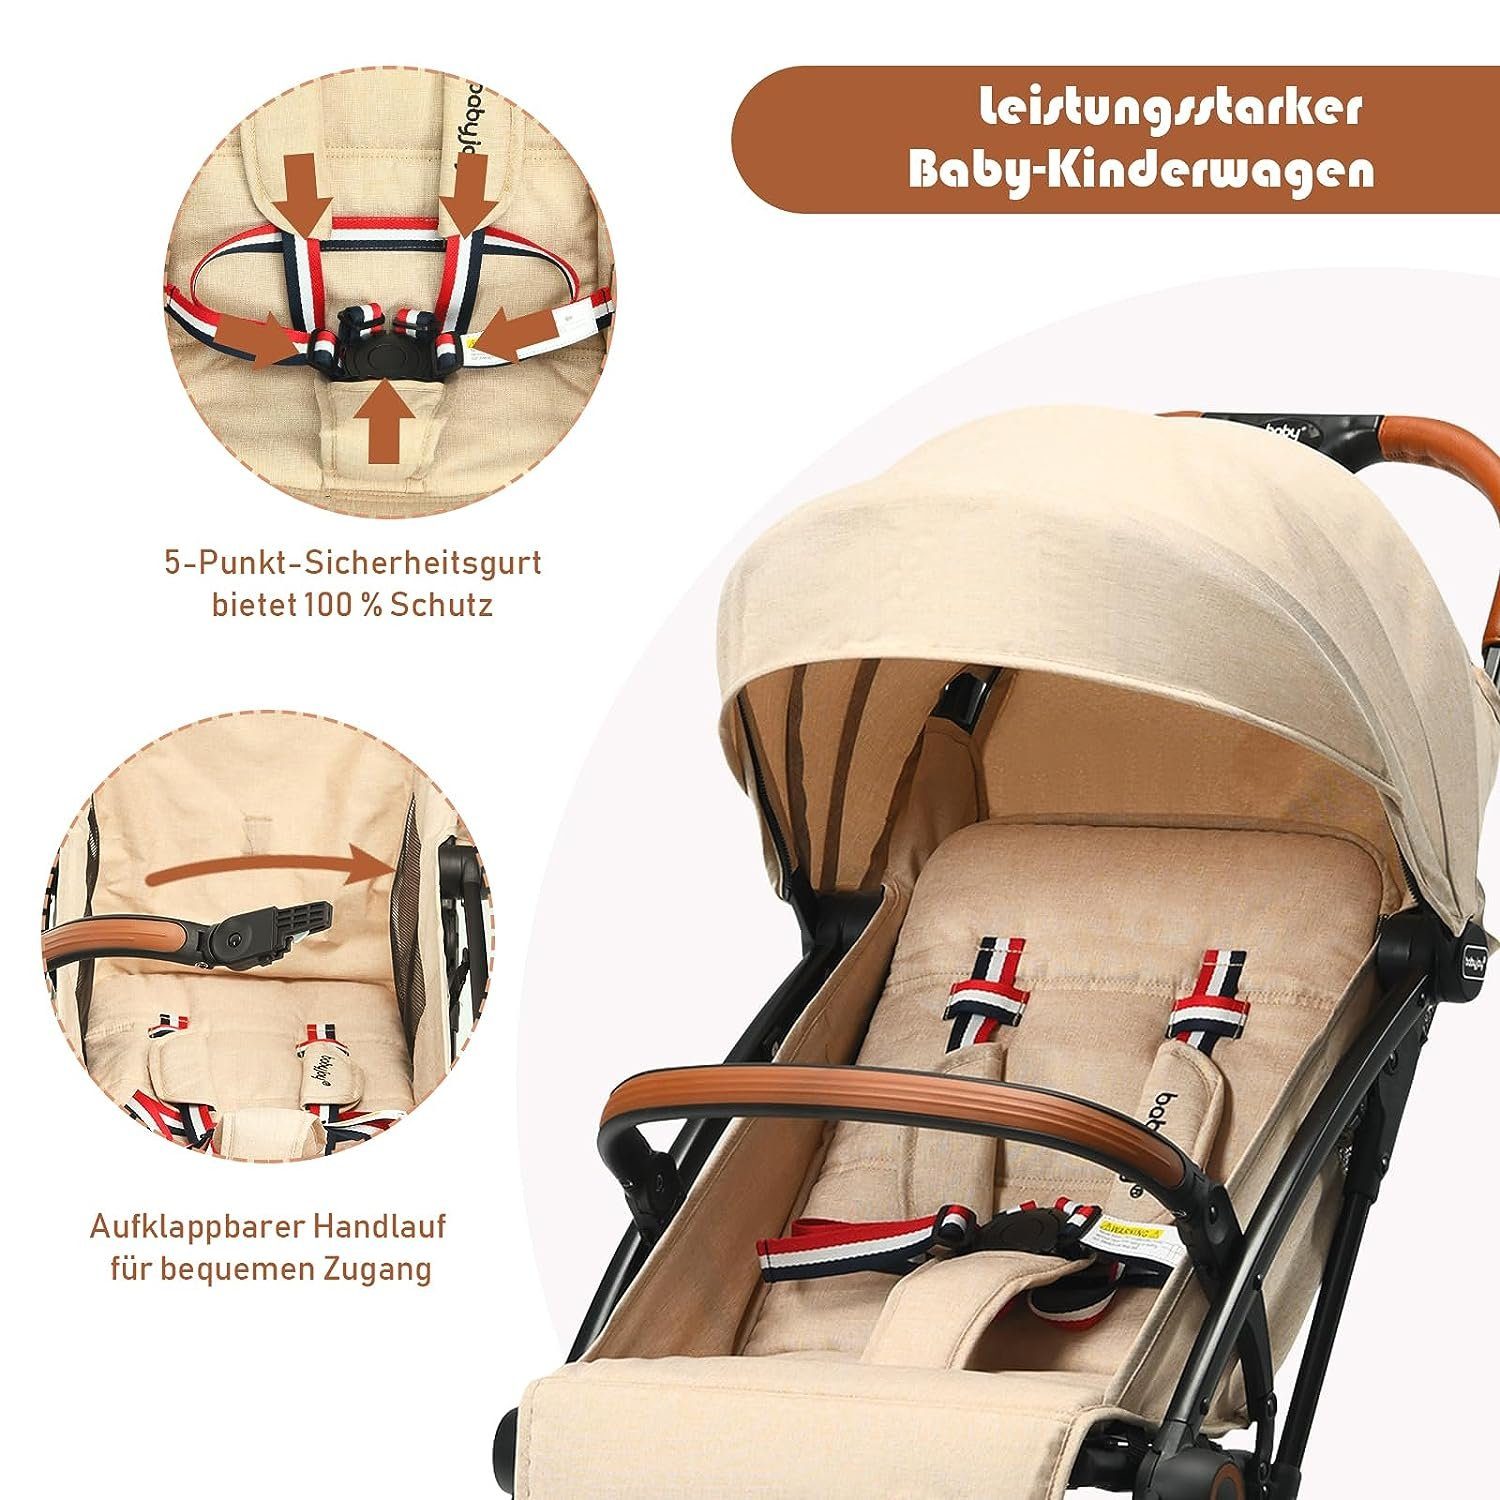 verstellbar&tragbar&faltbar, alt Kinder-Buggy 3 beige KOMFOTTEU für Kinderwagen, bis Jahre Baby